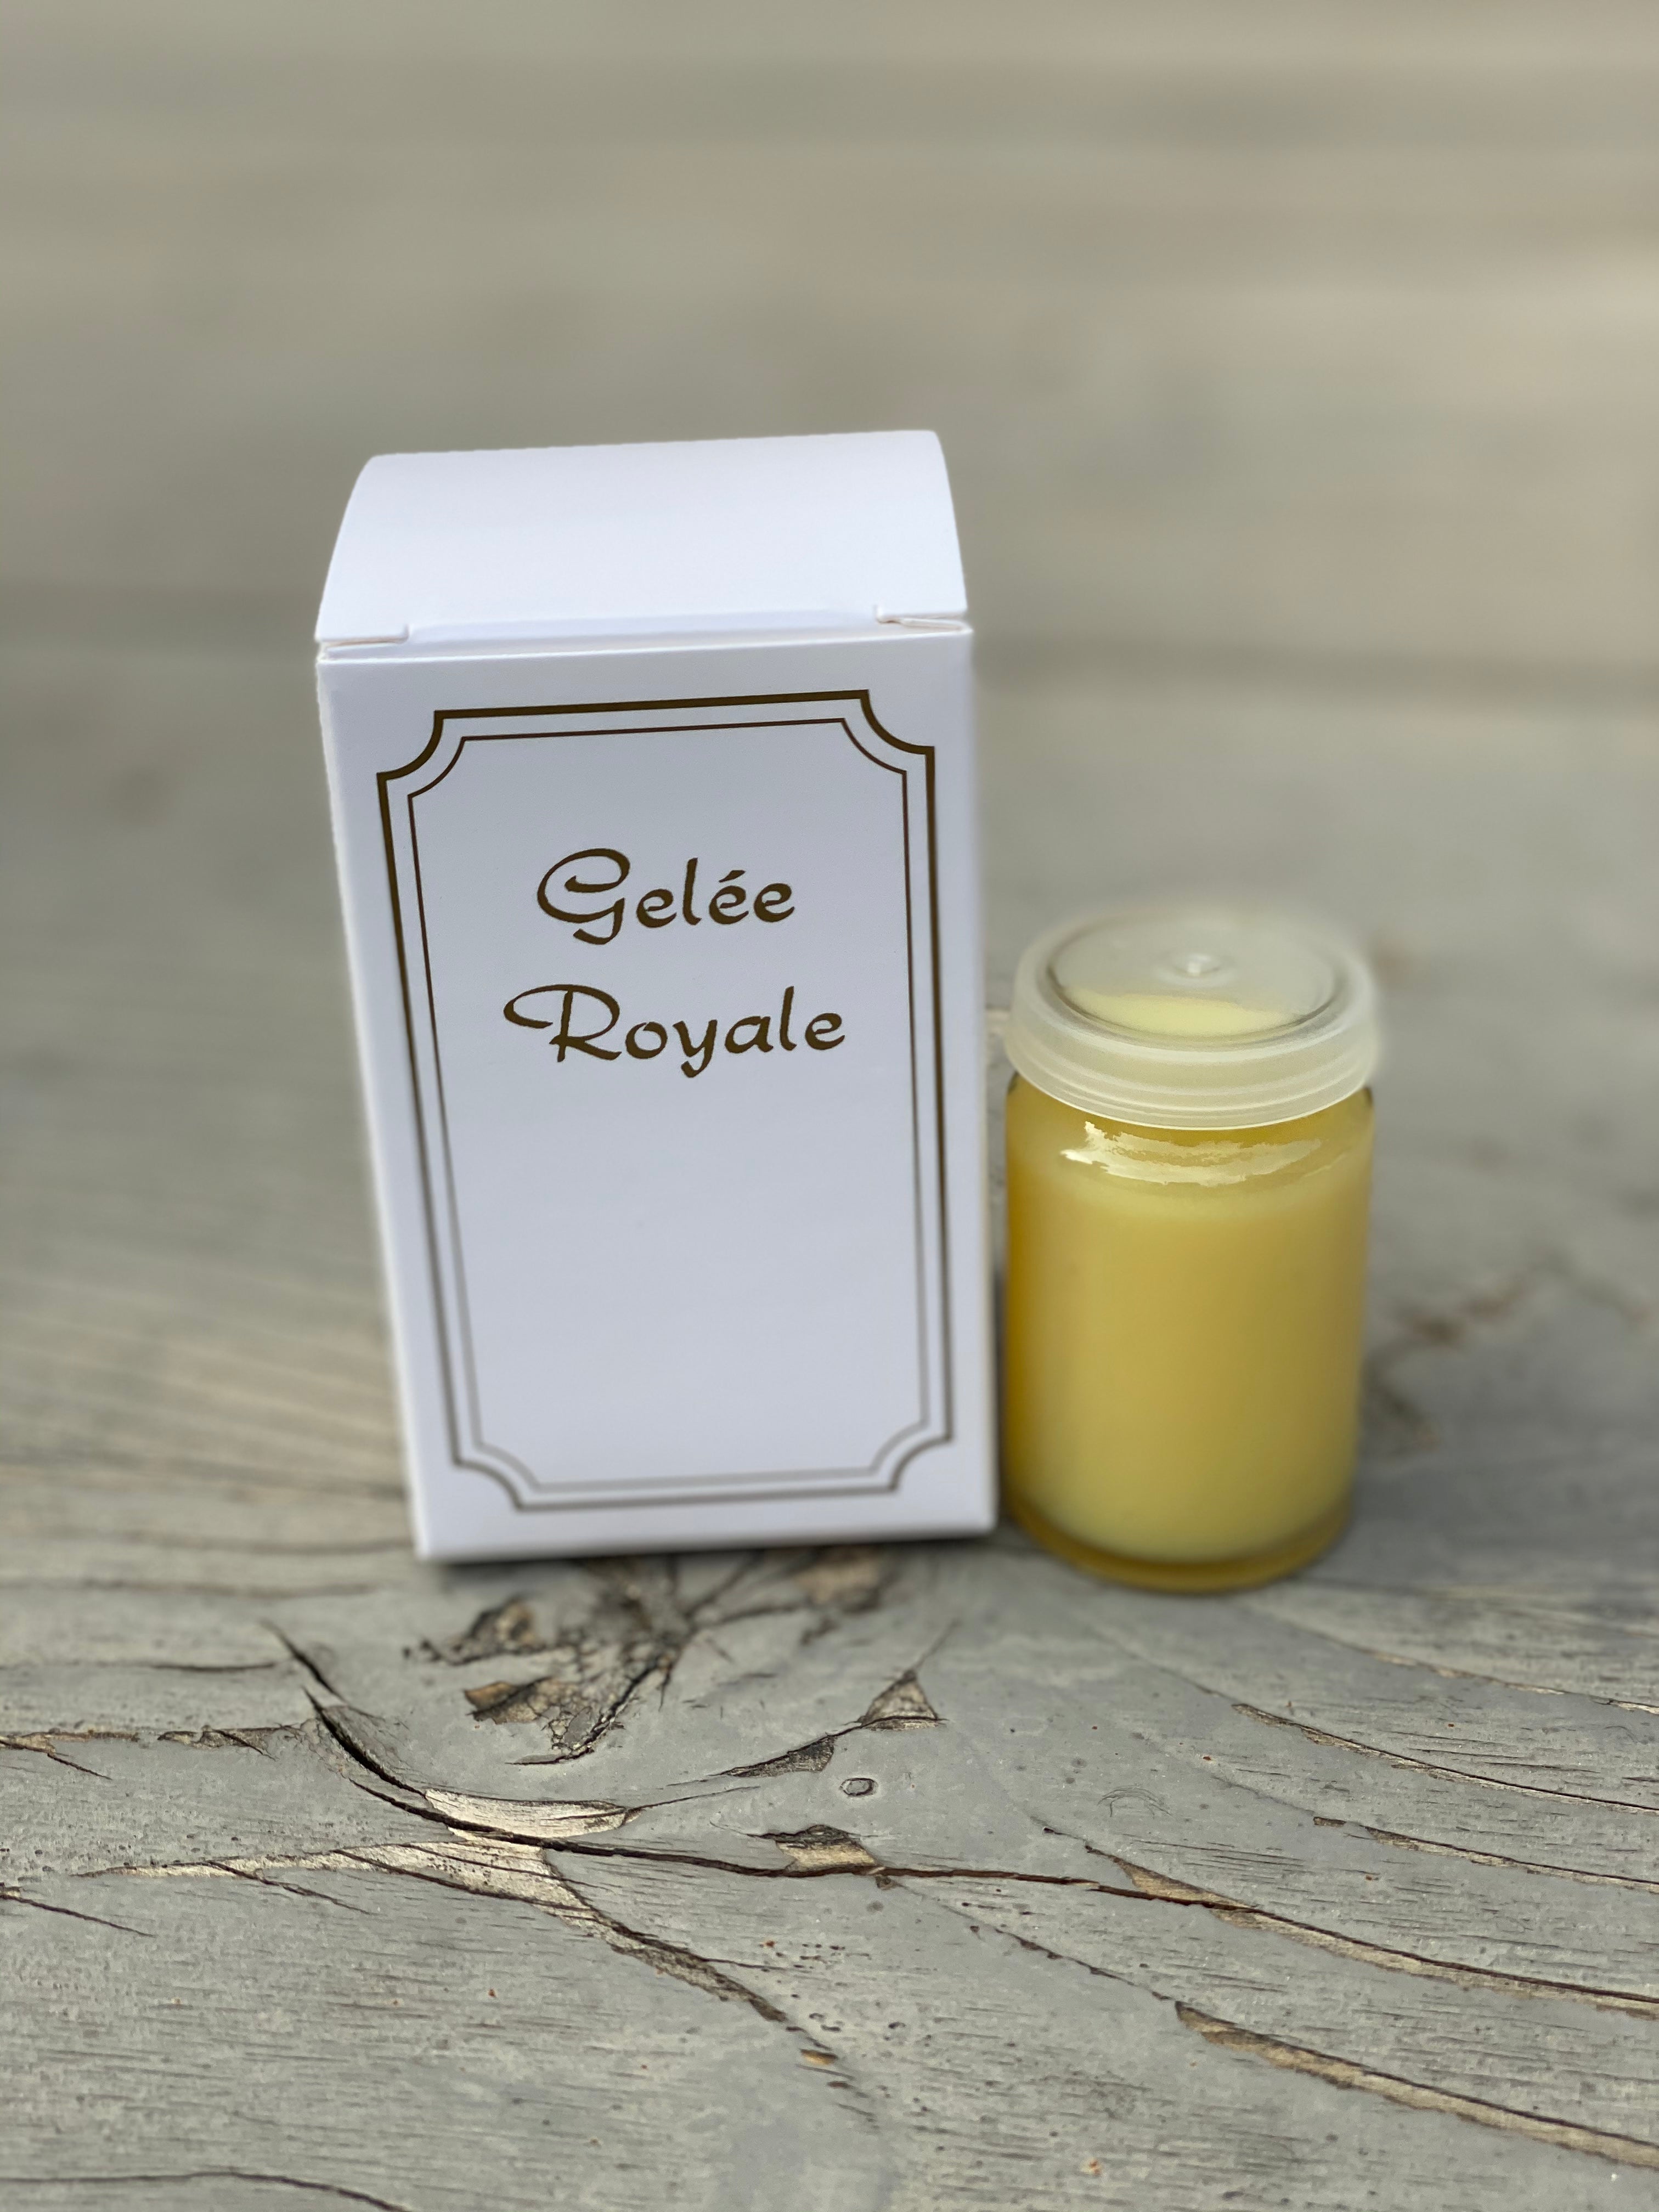 Gelée Royale Française BIO - Produits de la ruche